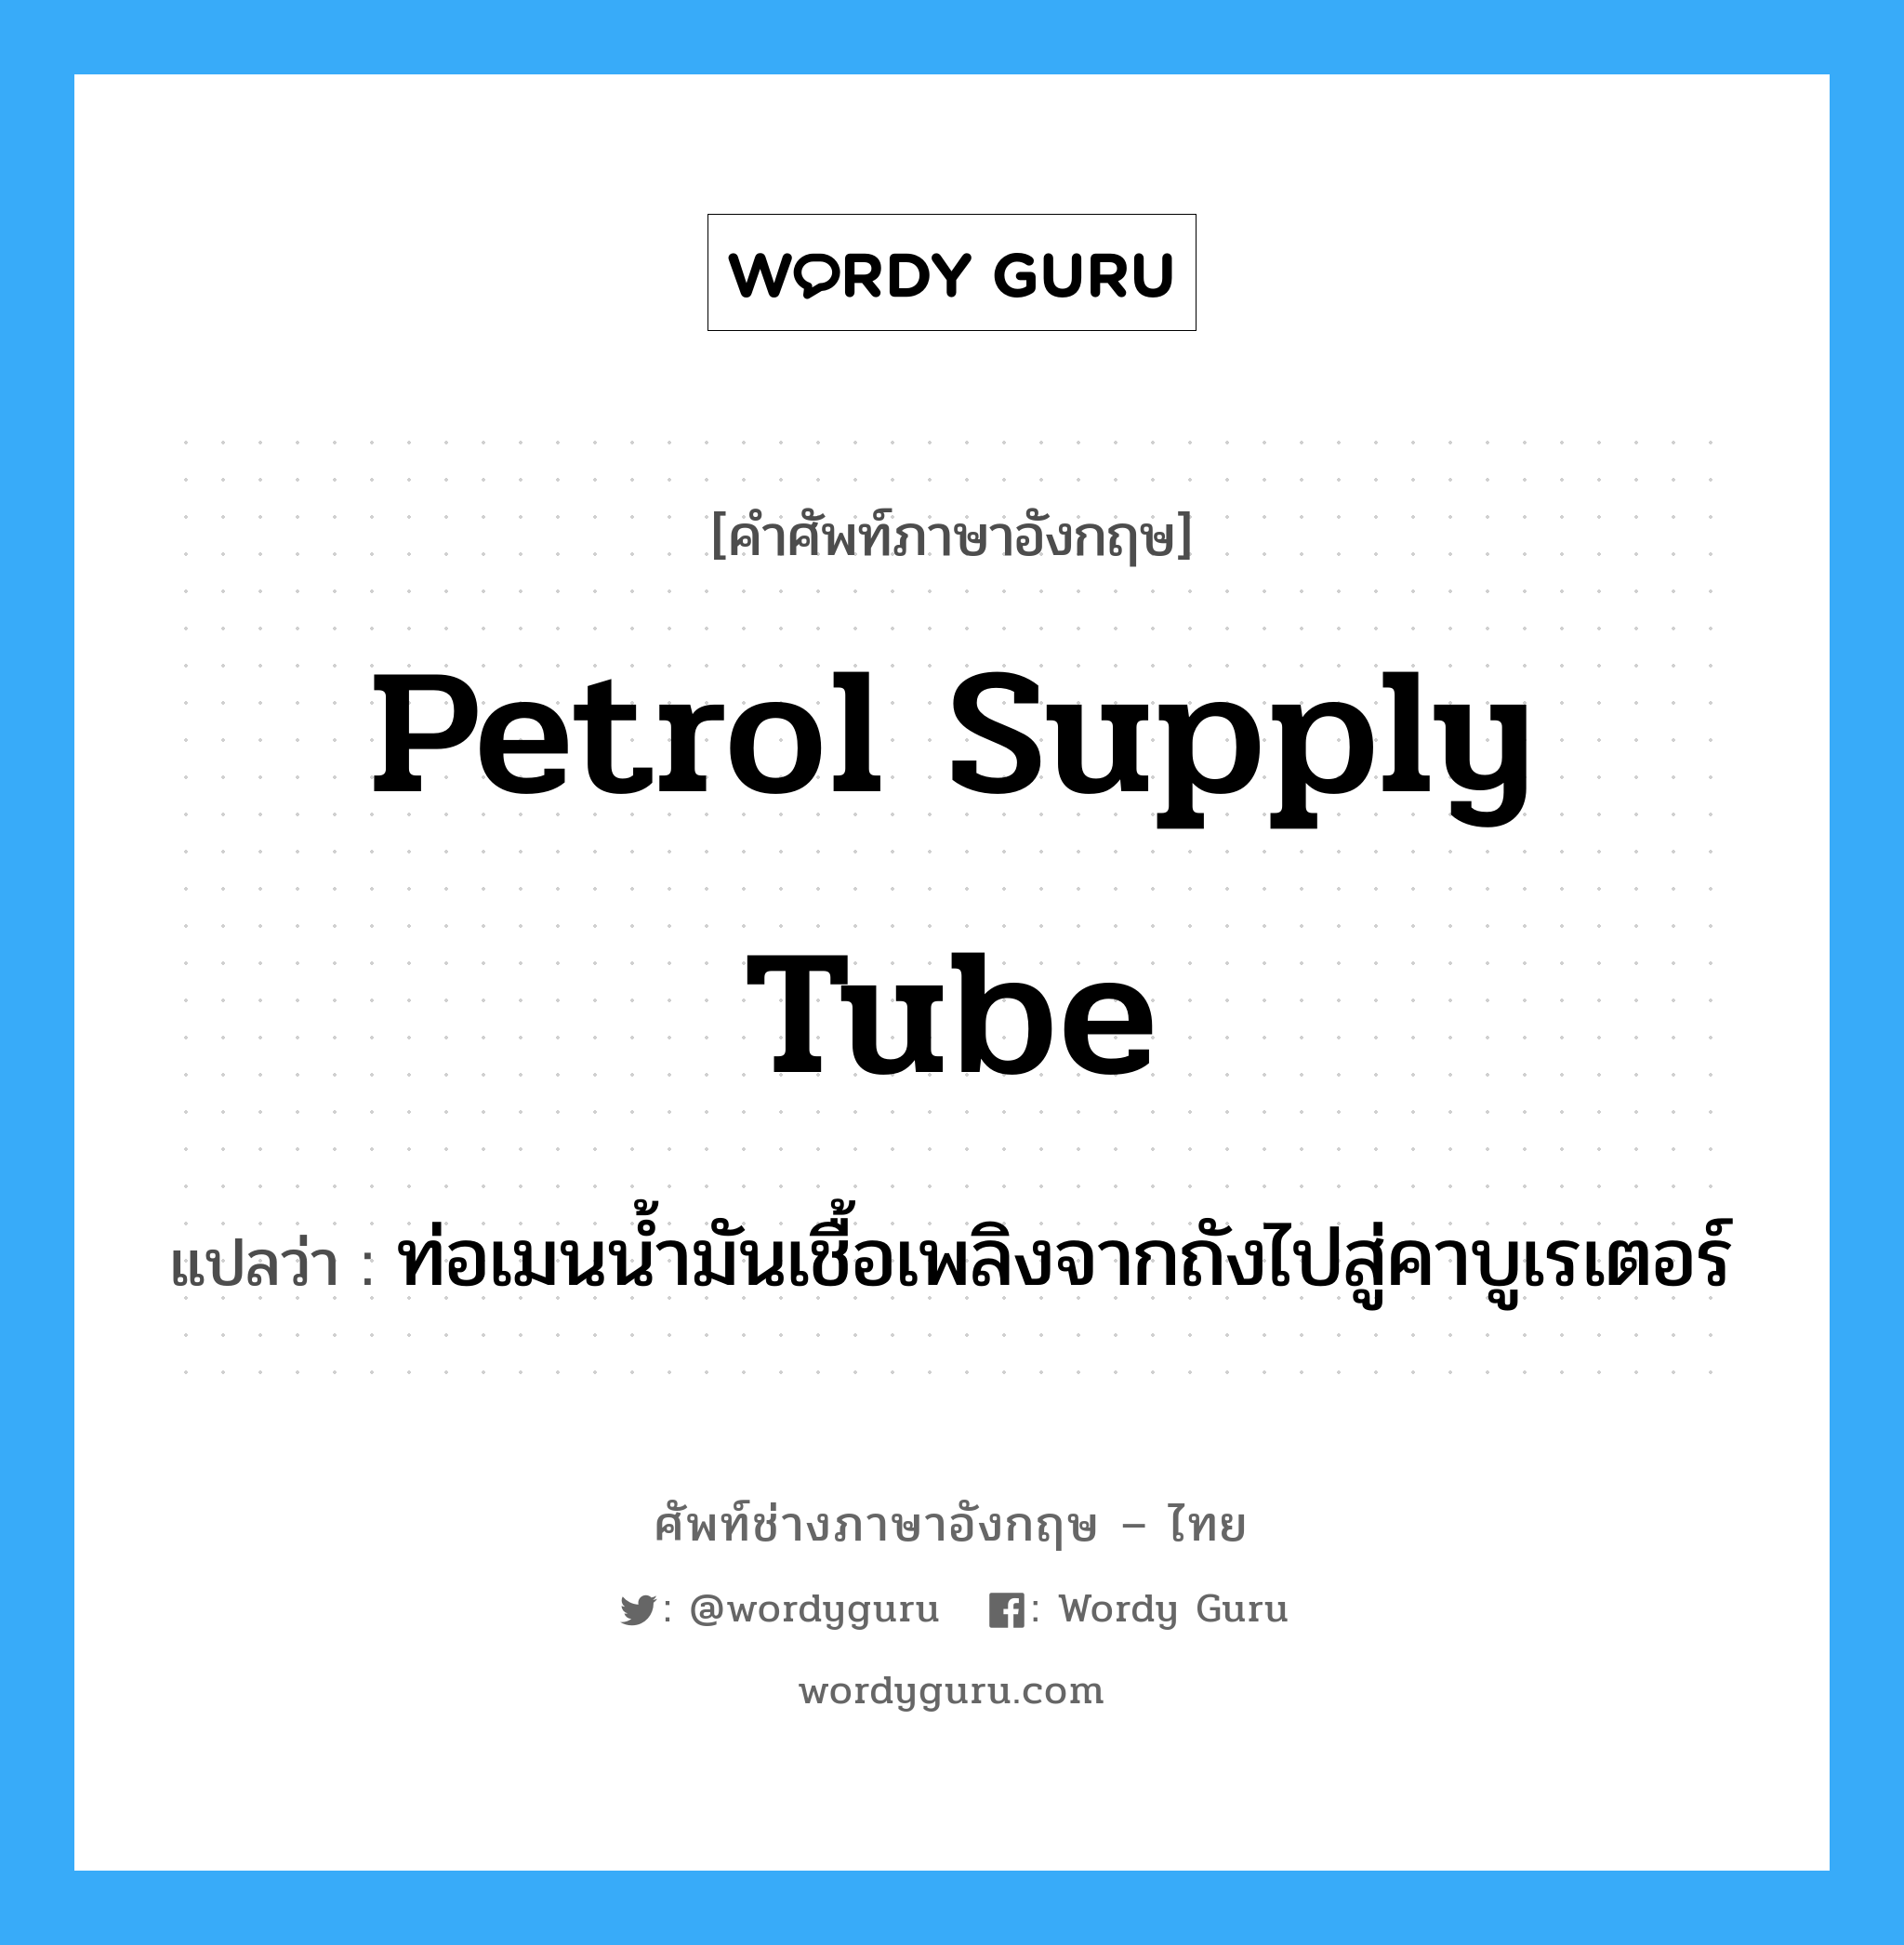 petrol supply tube แปลว่า?, คำศัพท์ช่างภาษาอังกฤษ - ไทย petrol supply tube คำศัพท์ภาษาอังกฤษ petrol supply tube แปลว่า ท่อเมนน้ำมันเชื้อเพลิงจากถังไปสู่คาบูเรเตอร์